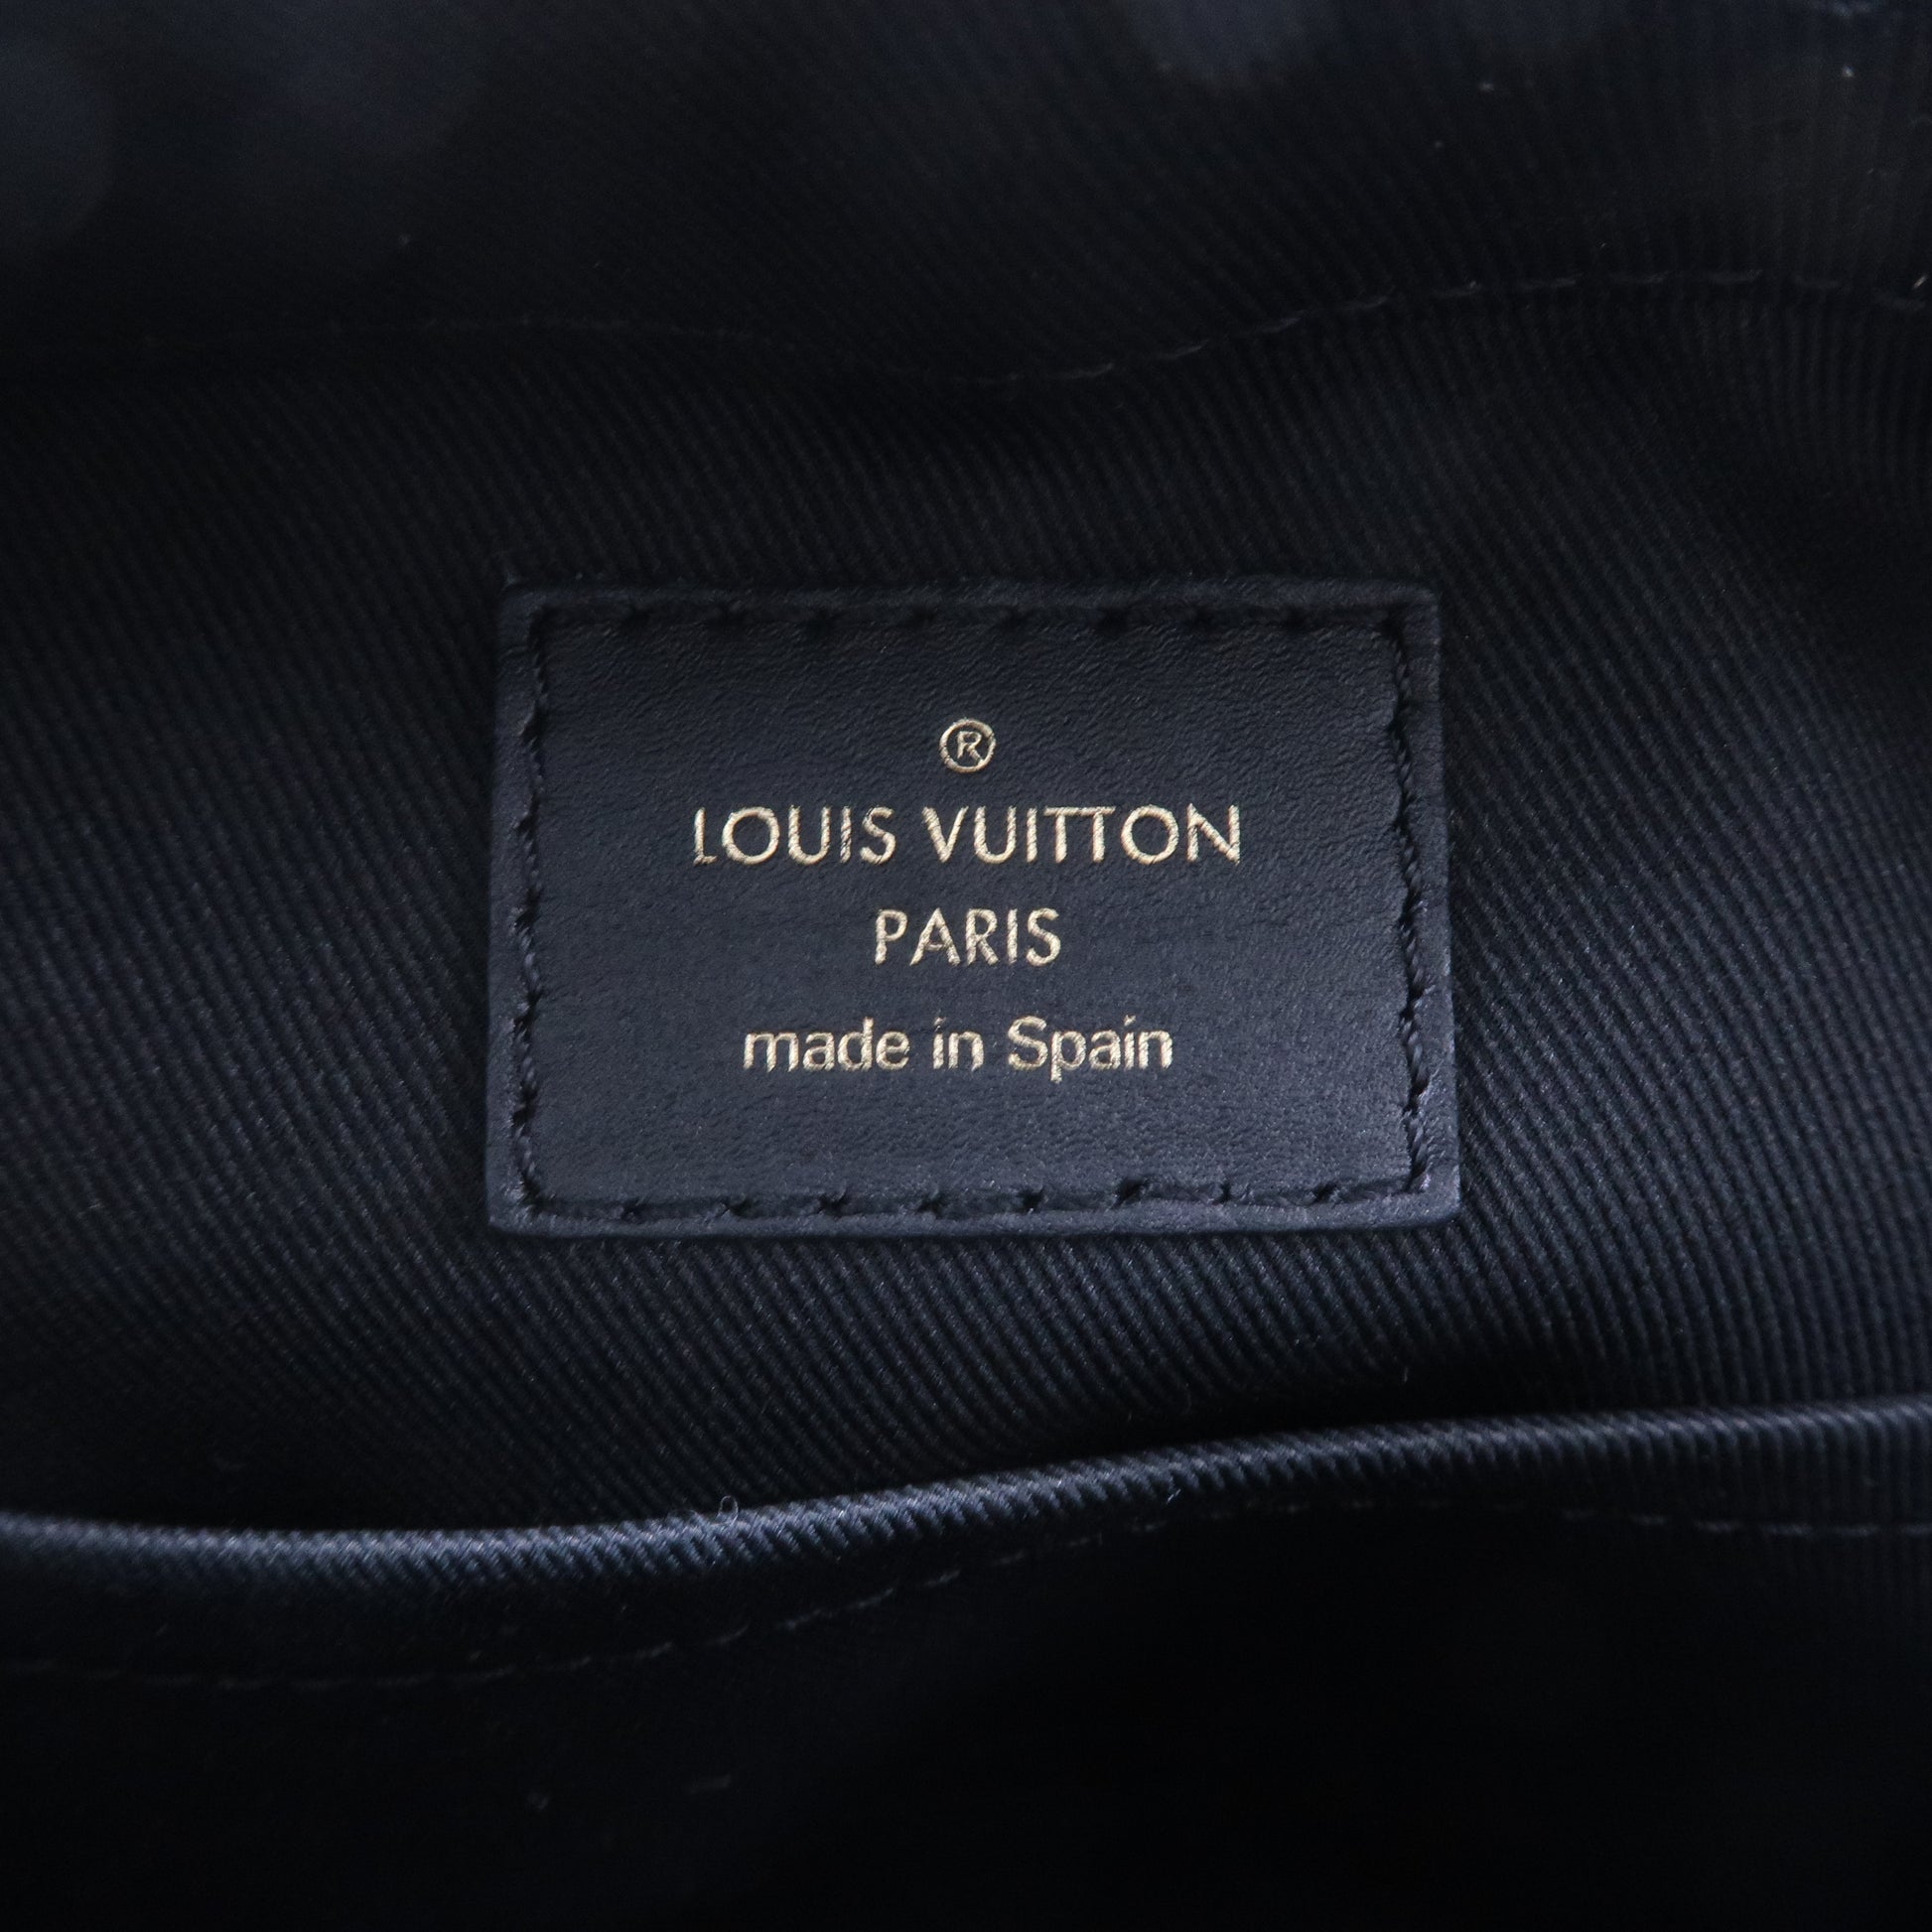 Authentic LOUIS VUITTON Monogram Saintonge M43555 Shoulder bag  #260-006-069